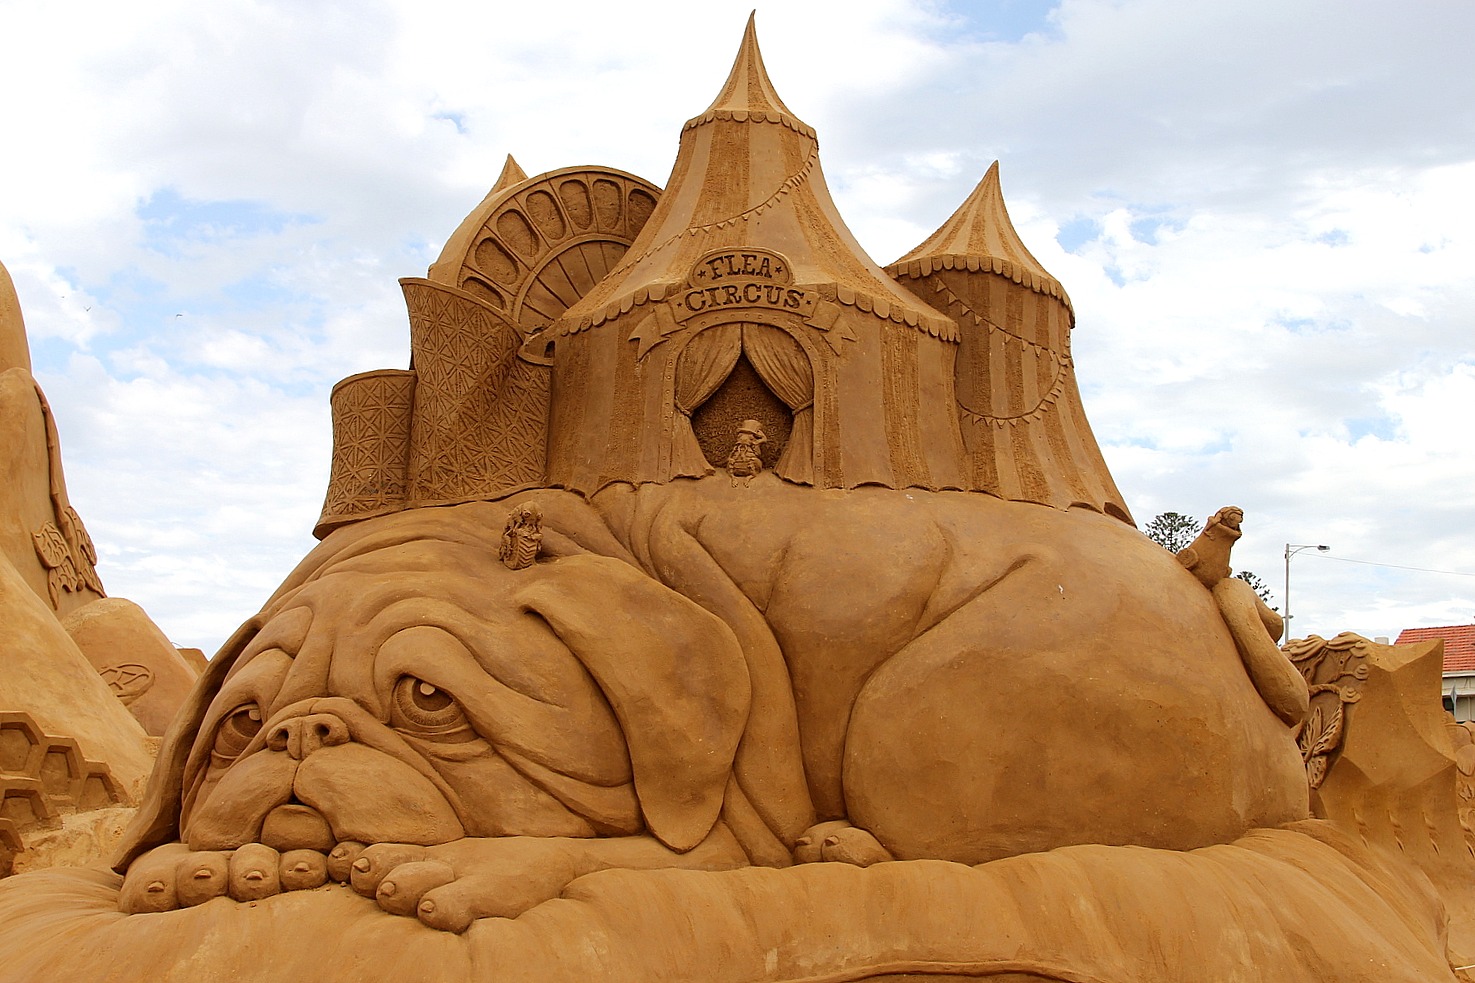 Нажмите на тот который создан людьми. Фигуры из песка. Песчаные скульптуры. Песочные скульптуры. Искусство из песка.